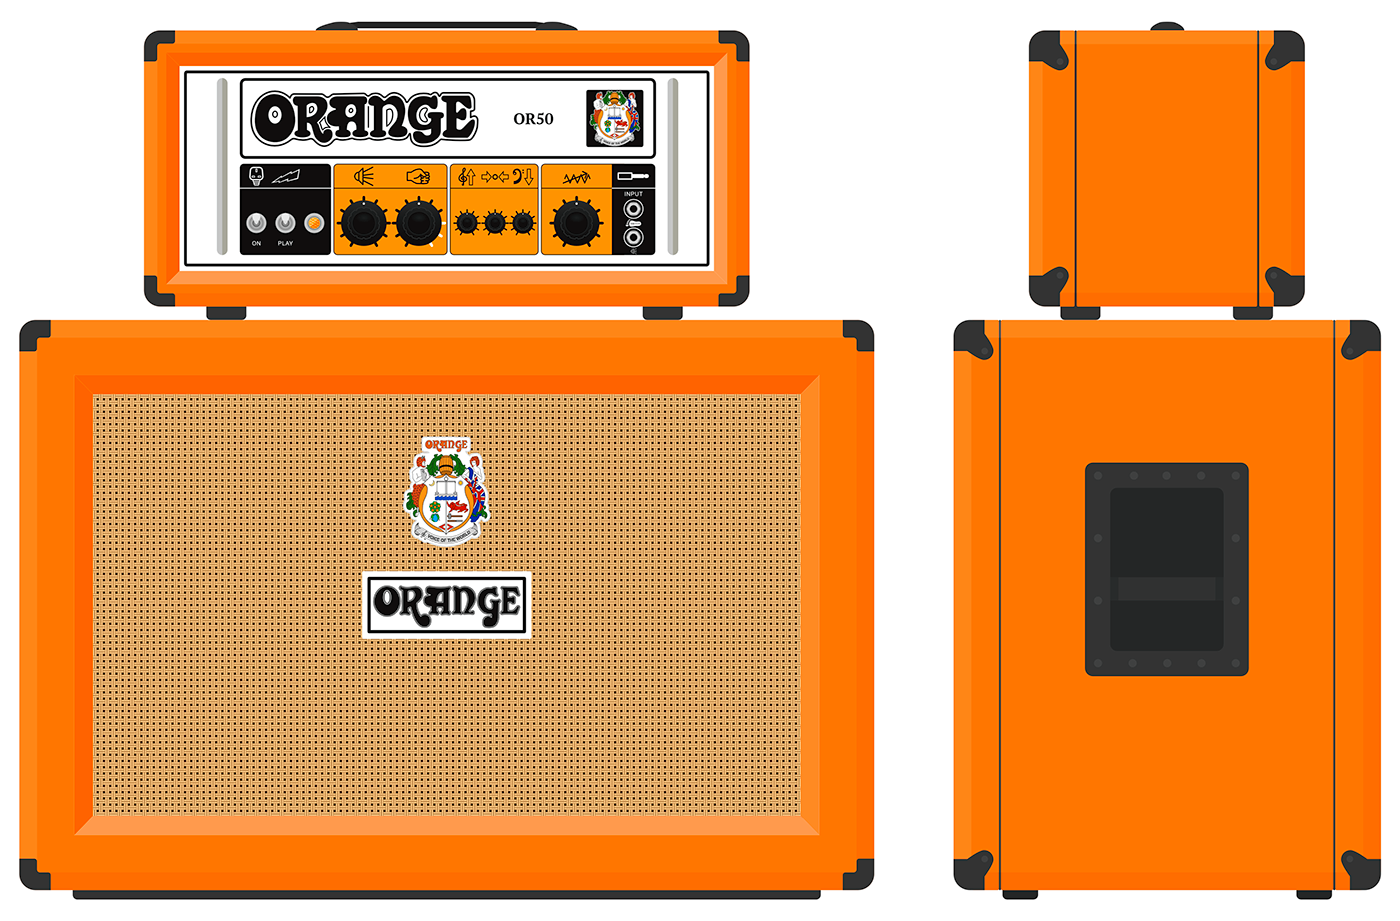 affinity designer vector artwork guitar amplifier Orange Amps adobe illustrator